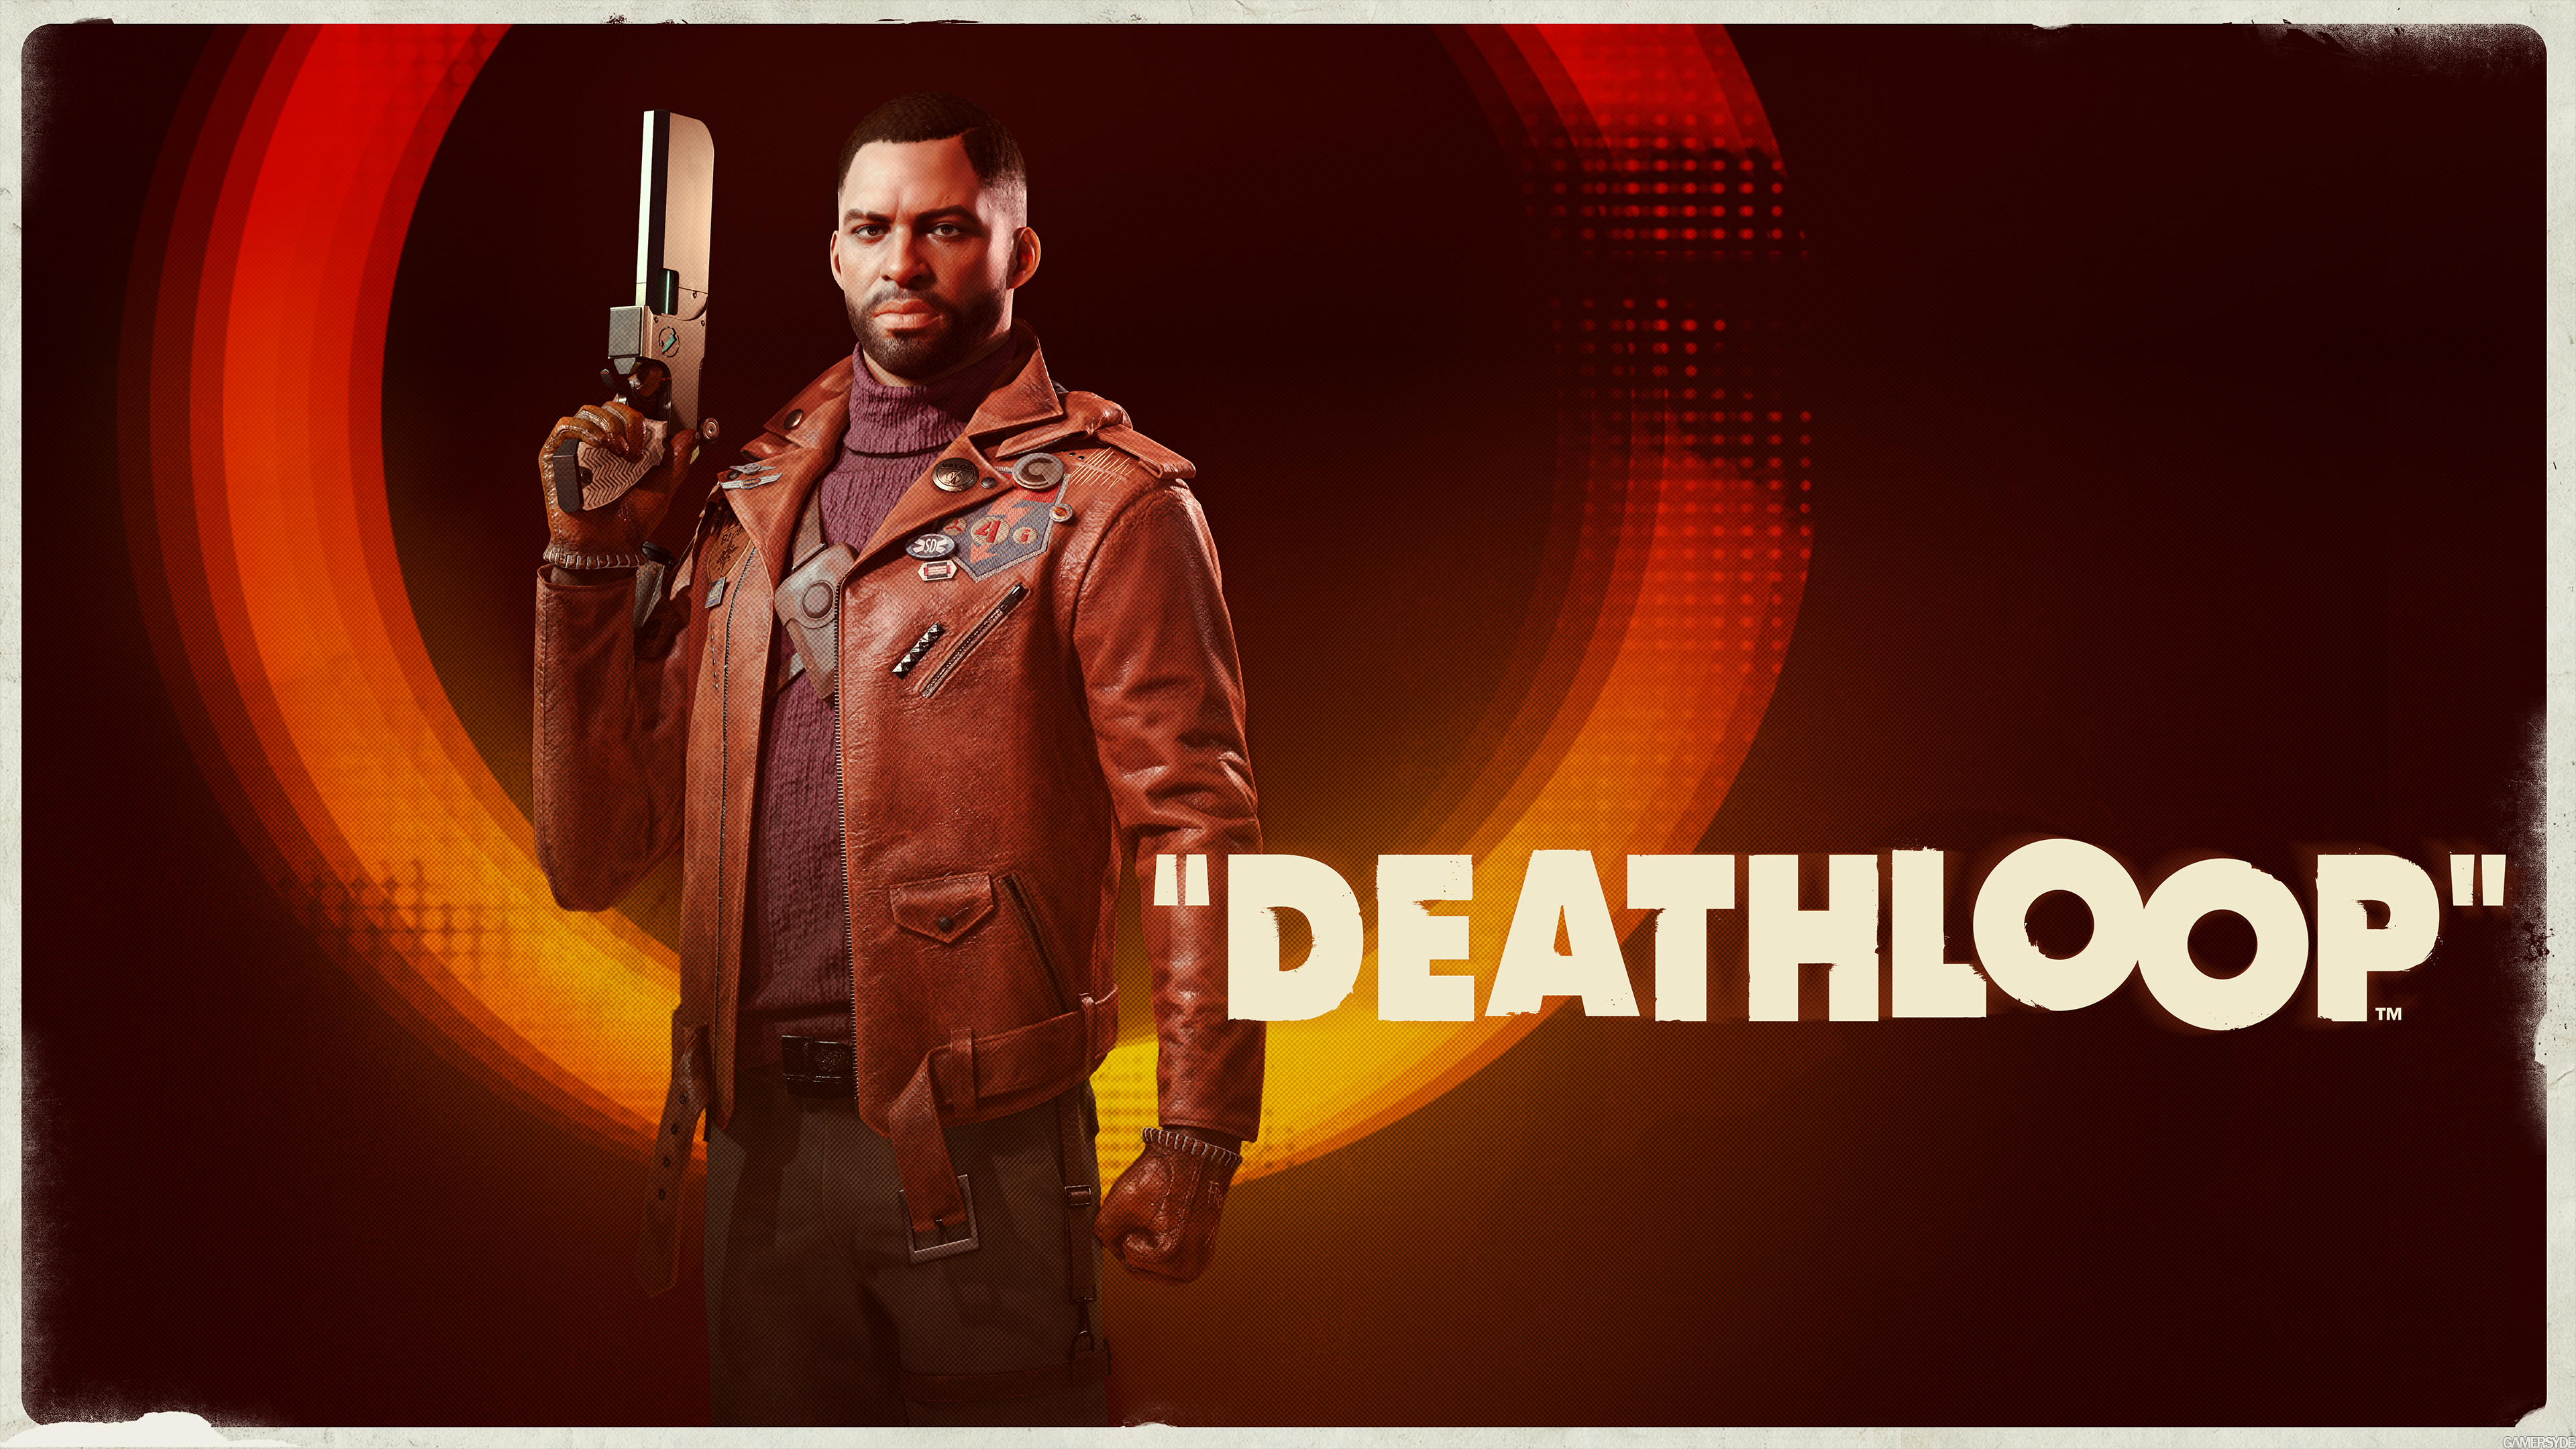 Video Game Deathloop HD Wallpaper | Background Image